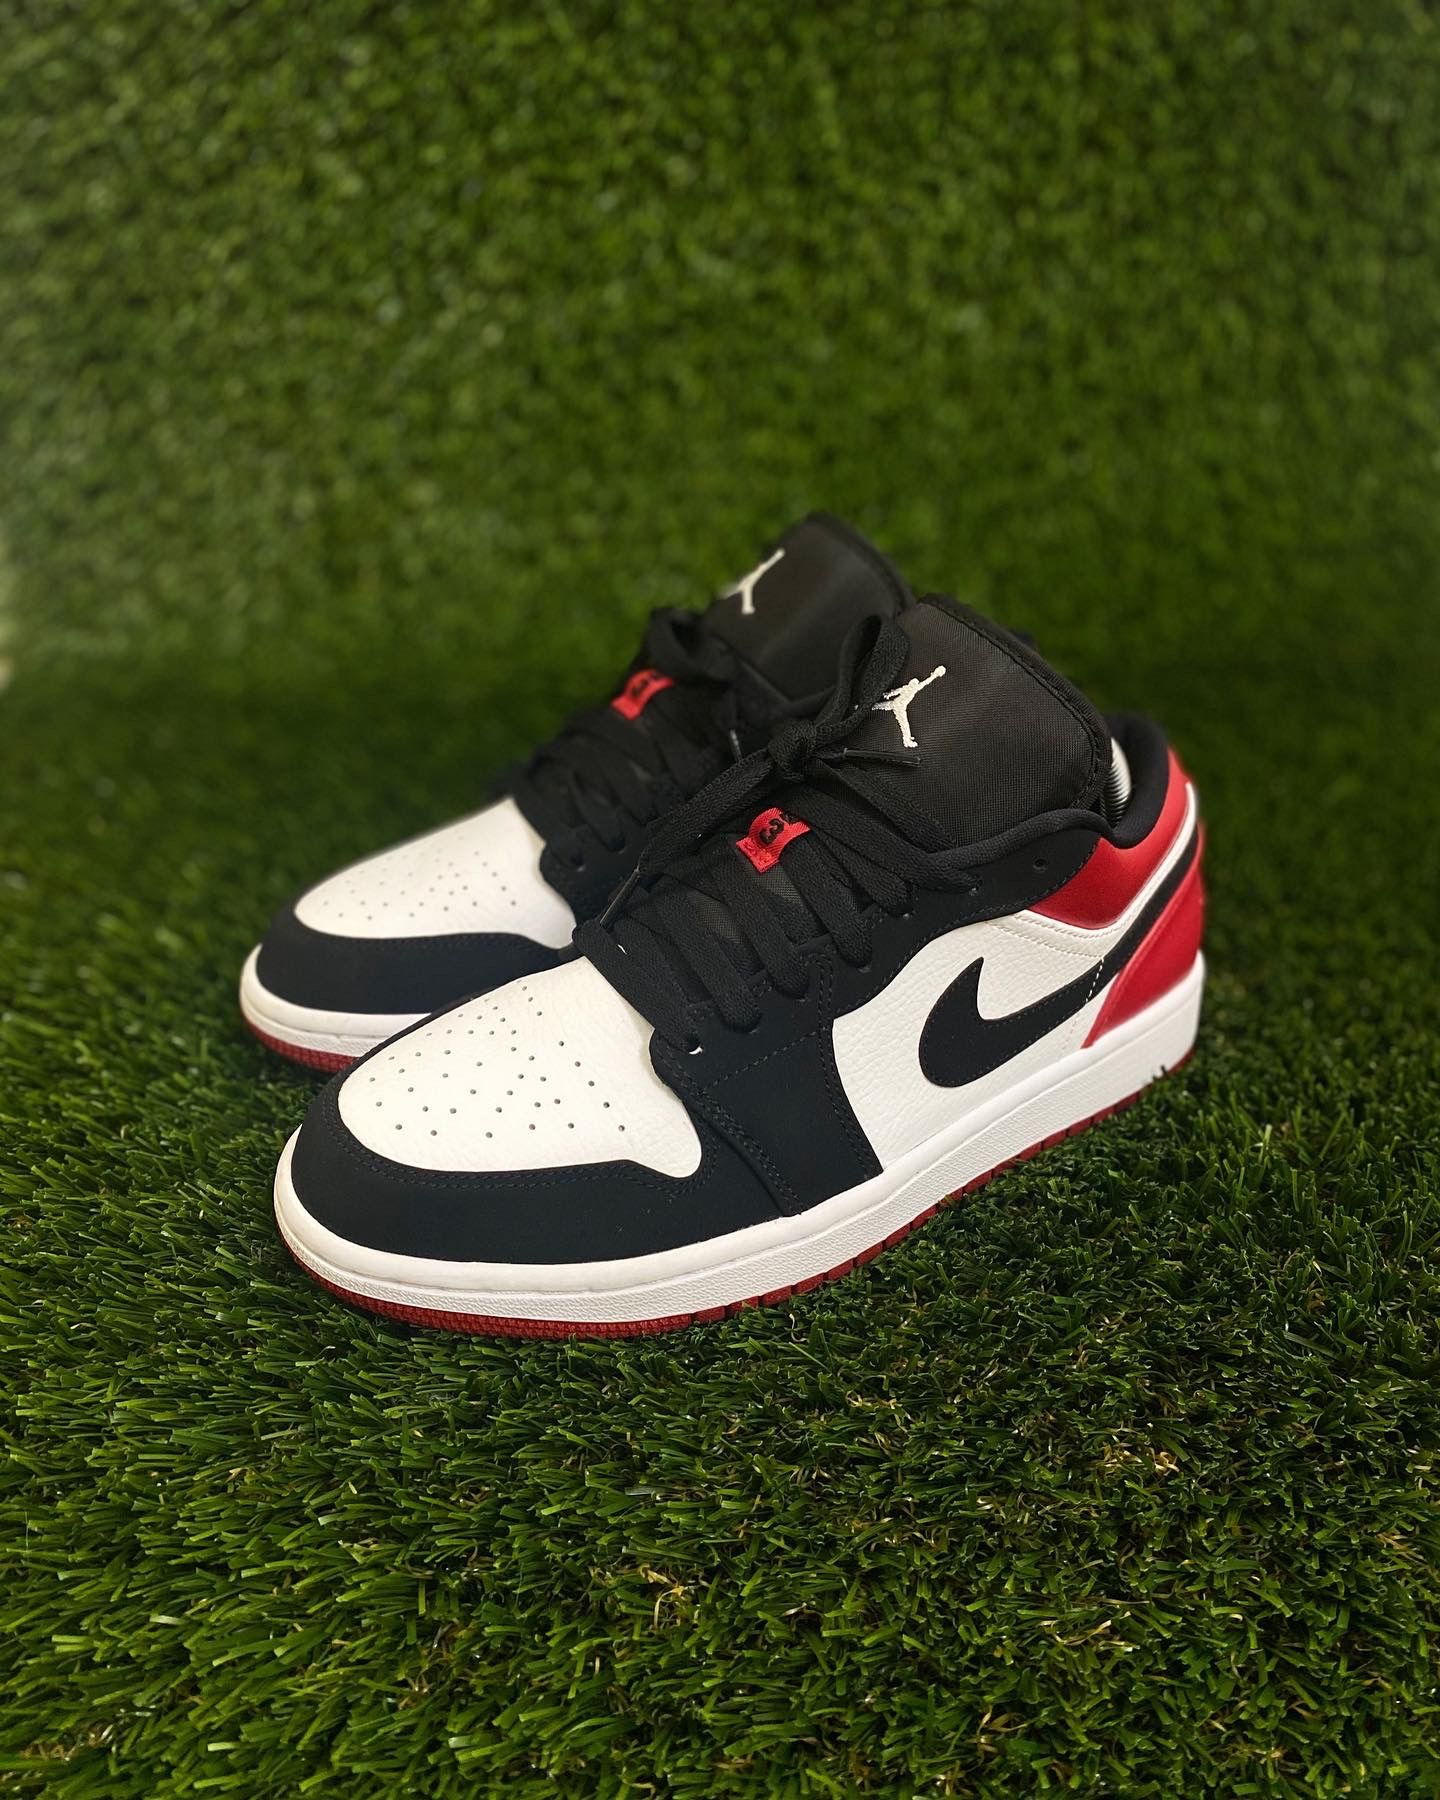 Air Jordan 1 Low ‘Black Toe’ size 9